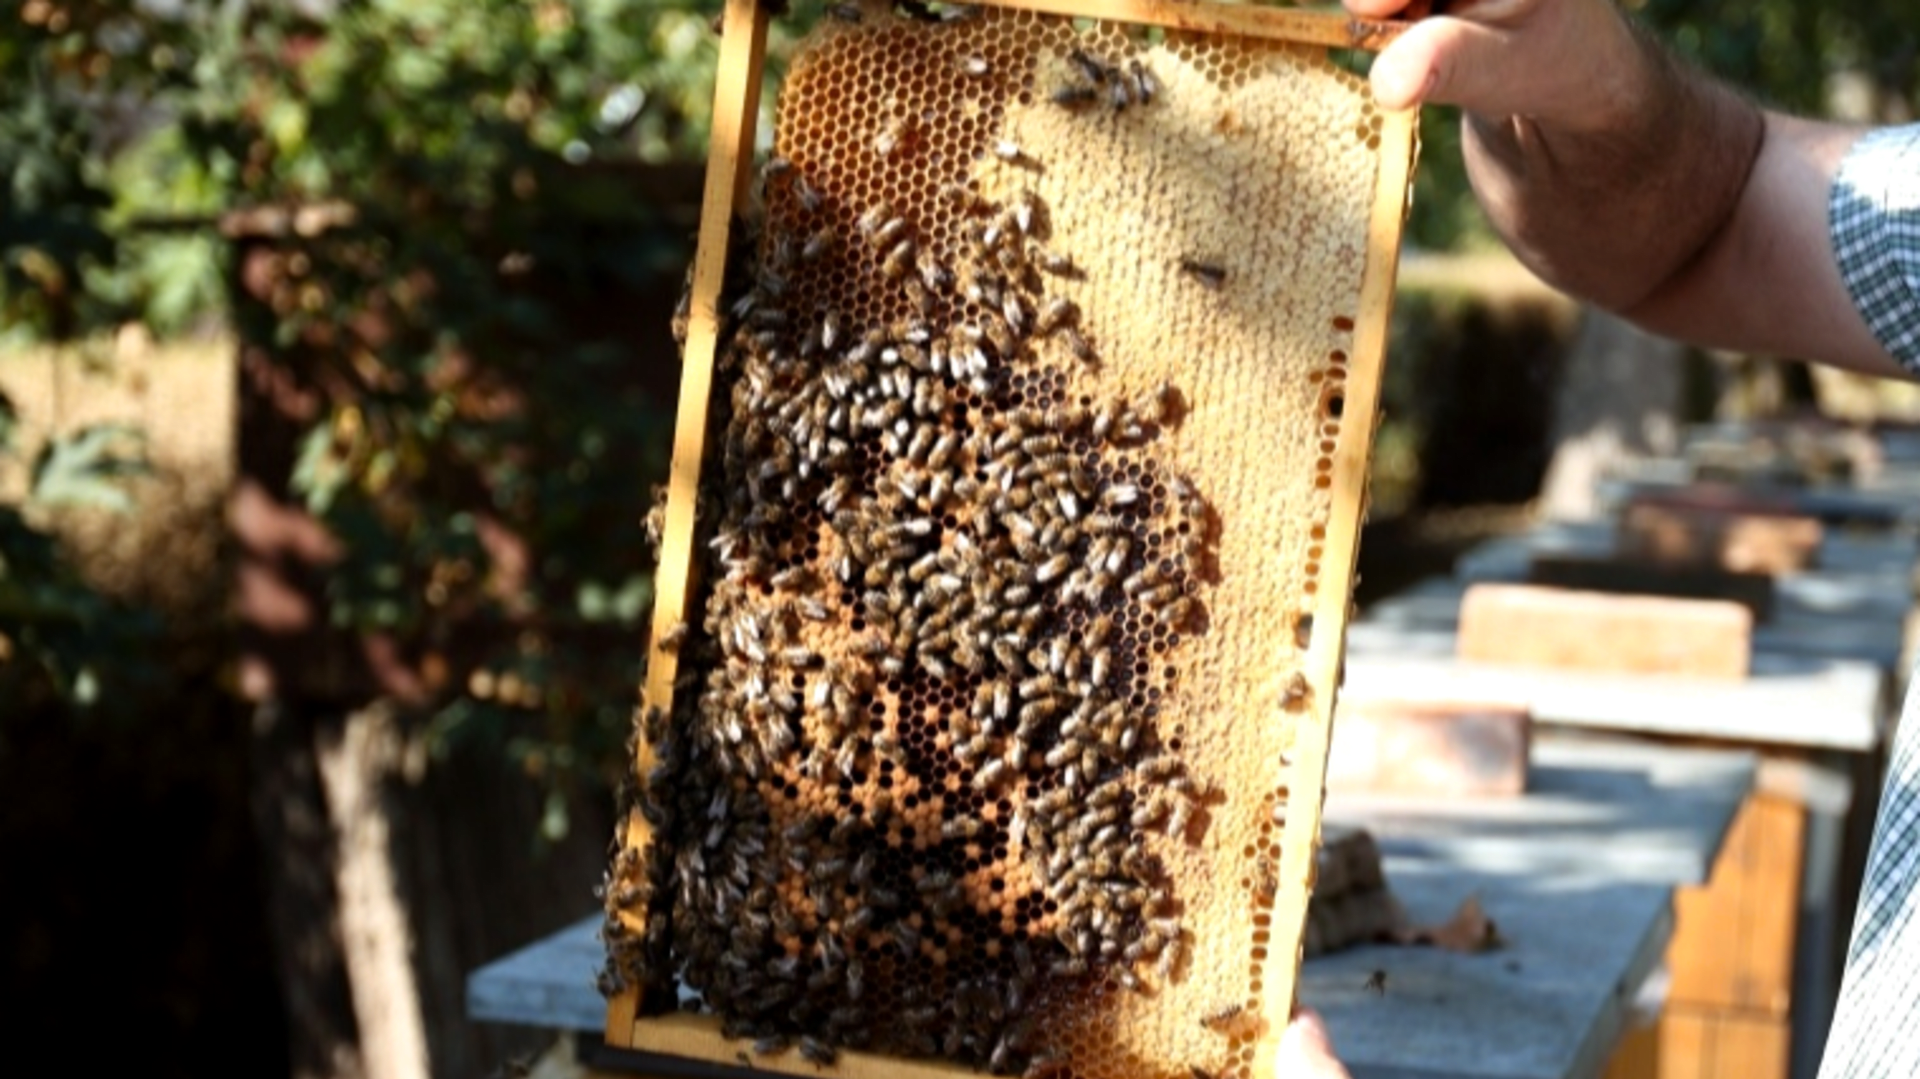 RECEPTÁŘ PRIMA NÁPADŮ: je čas ochránit včelstva před roztočem kleštíkem včelím